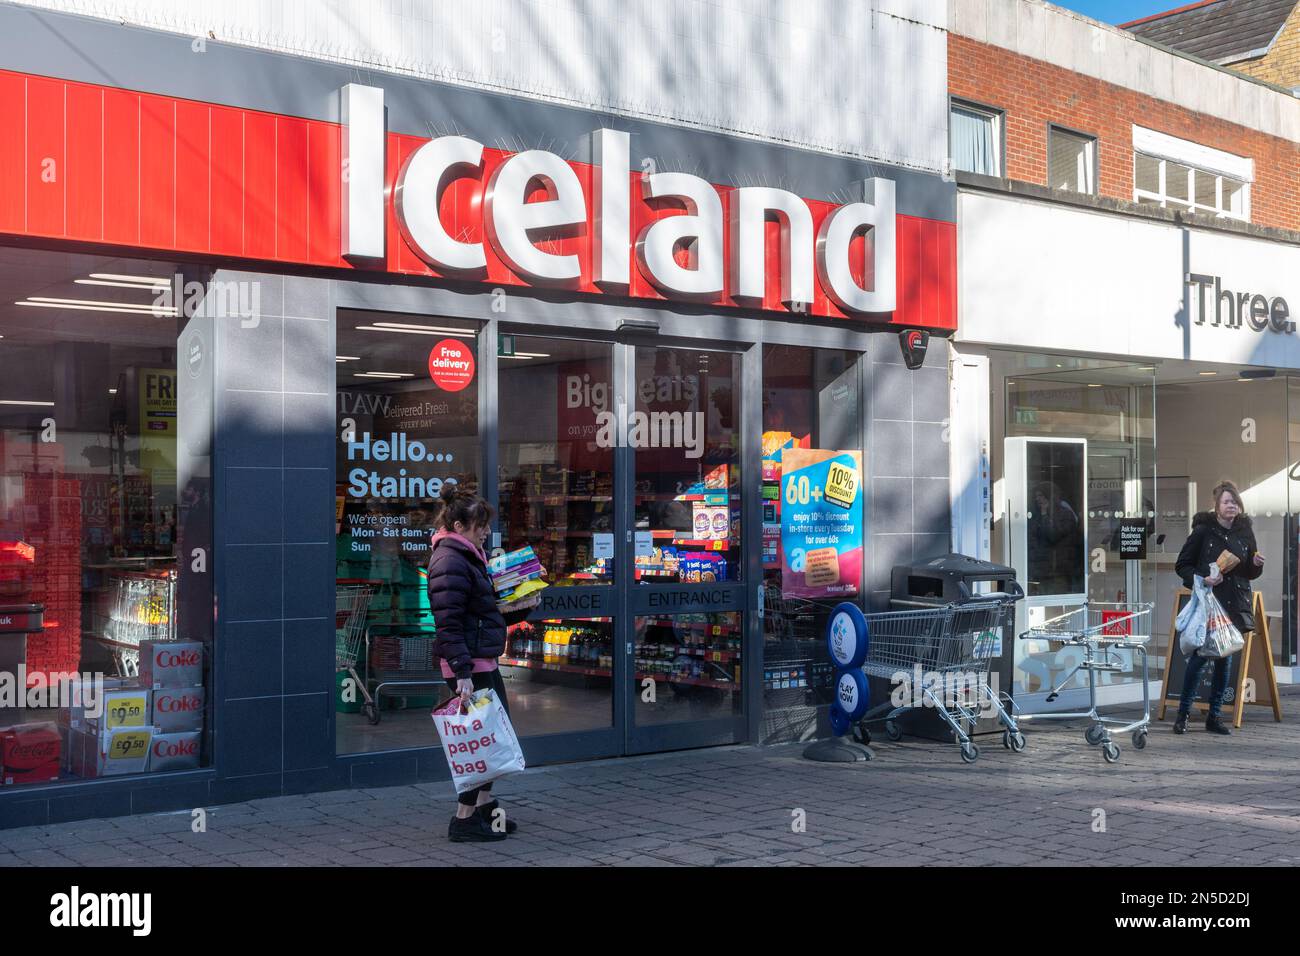 Iceland surgeler food shop di fronte alla High Street nel centro di Staines-upon-Thames con gli acquirenti, Surrey, Inghilterra, Regno Unito Foto Stock